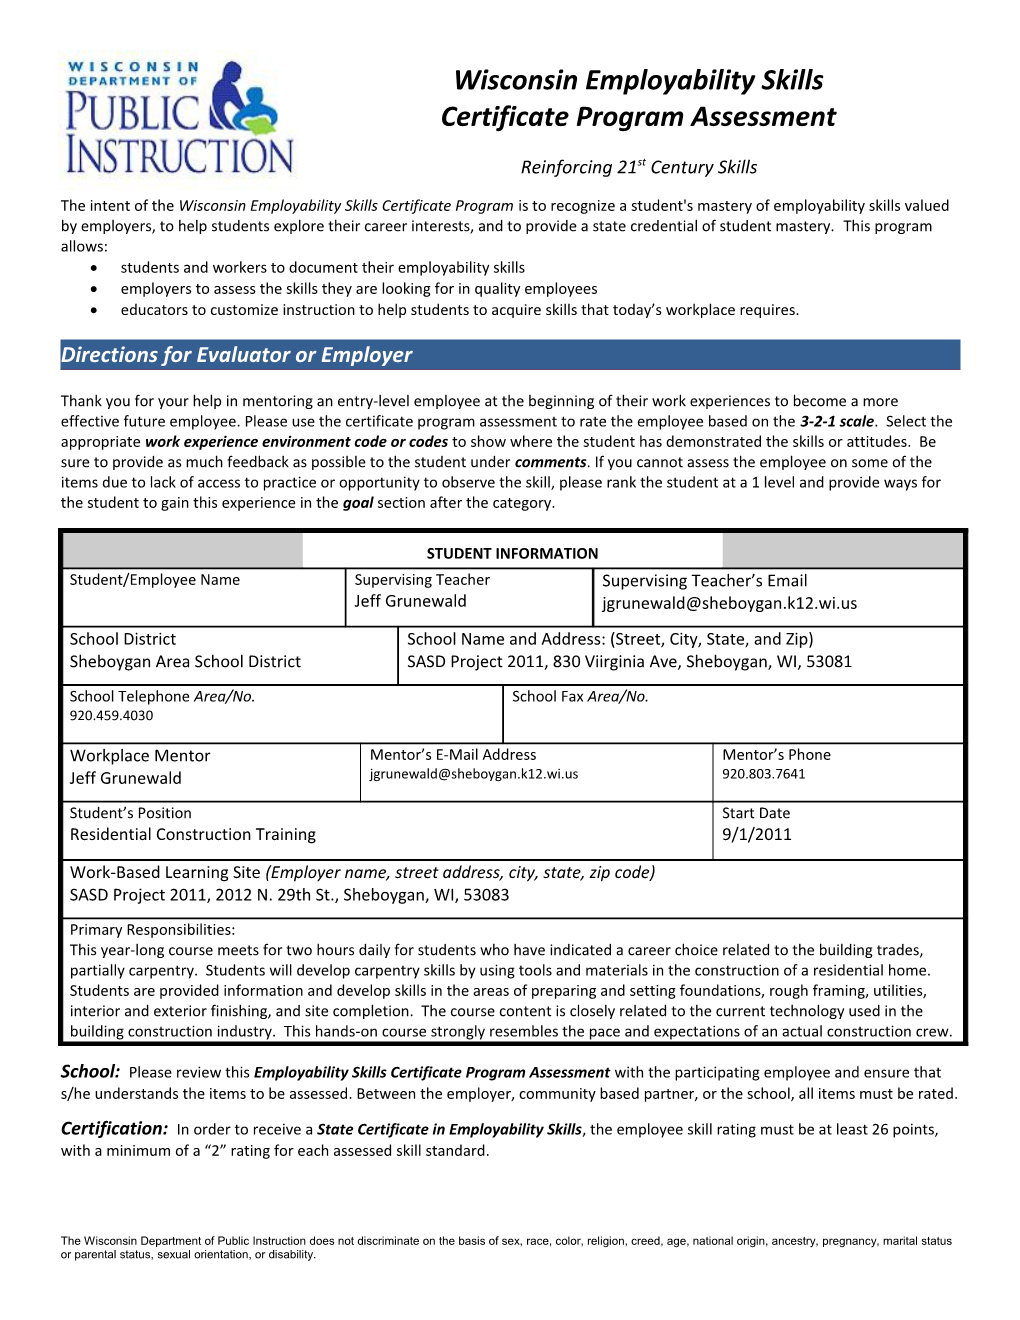 Certificate Program Assessment